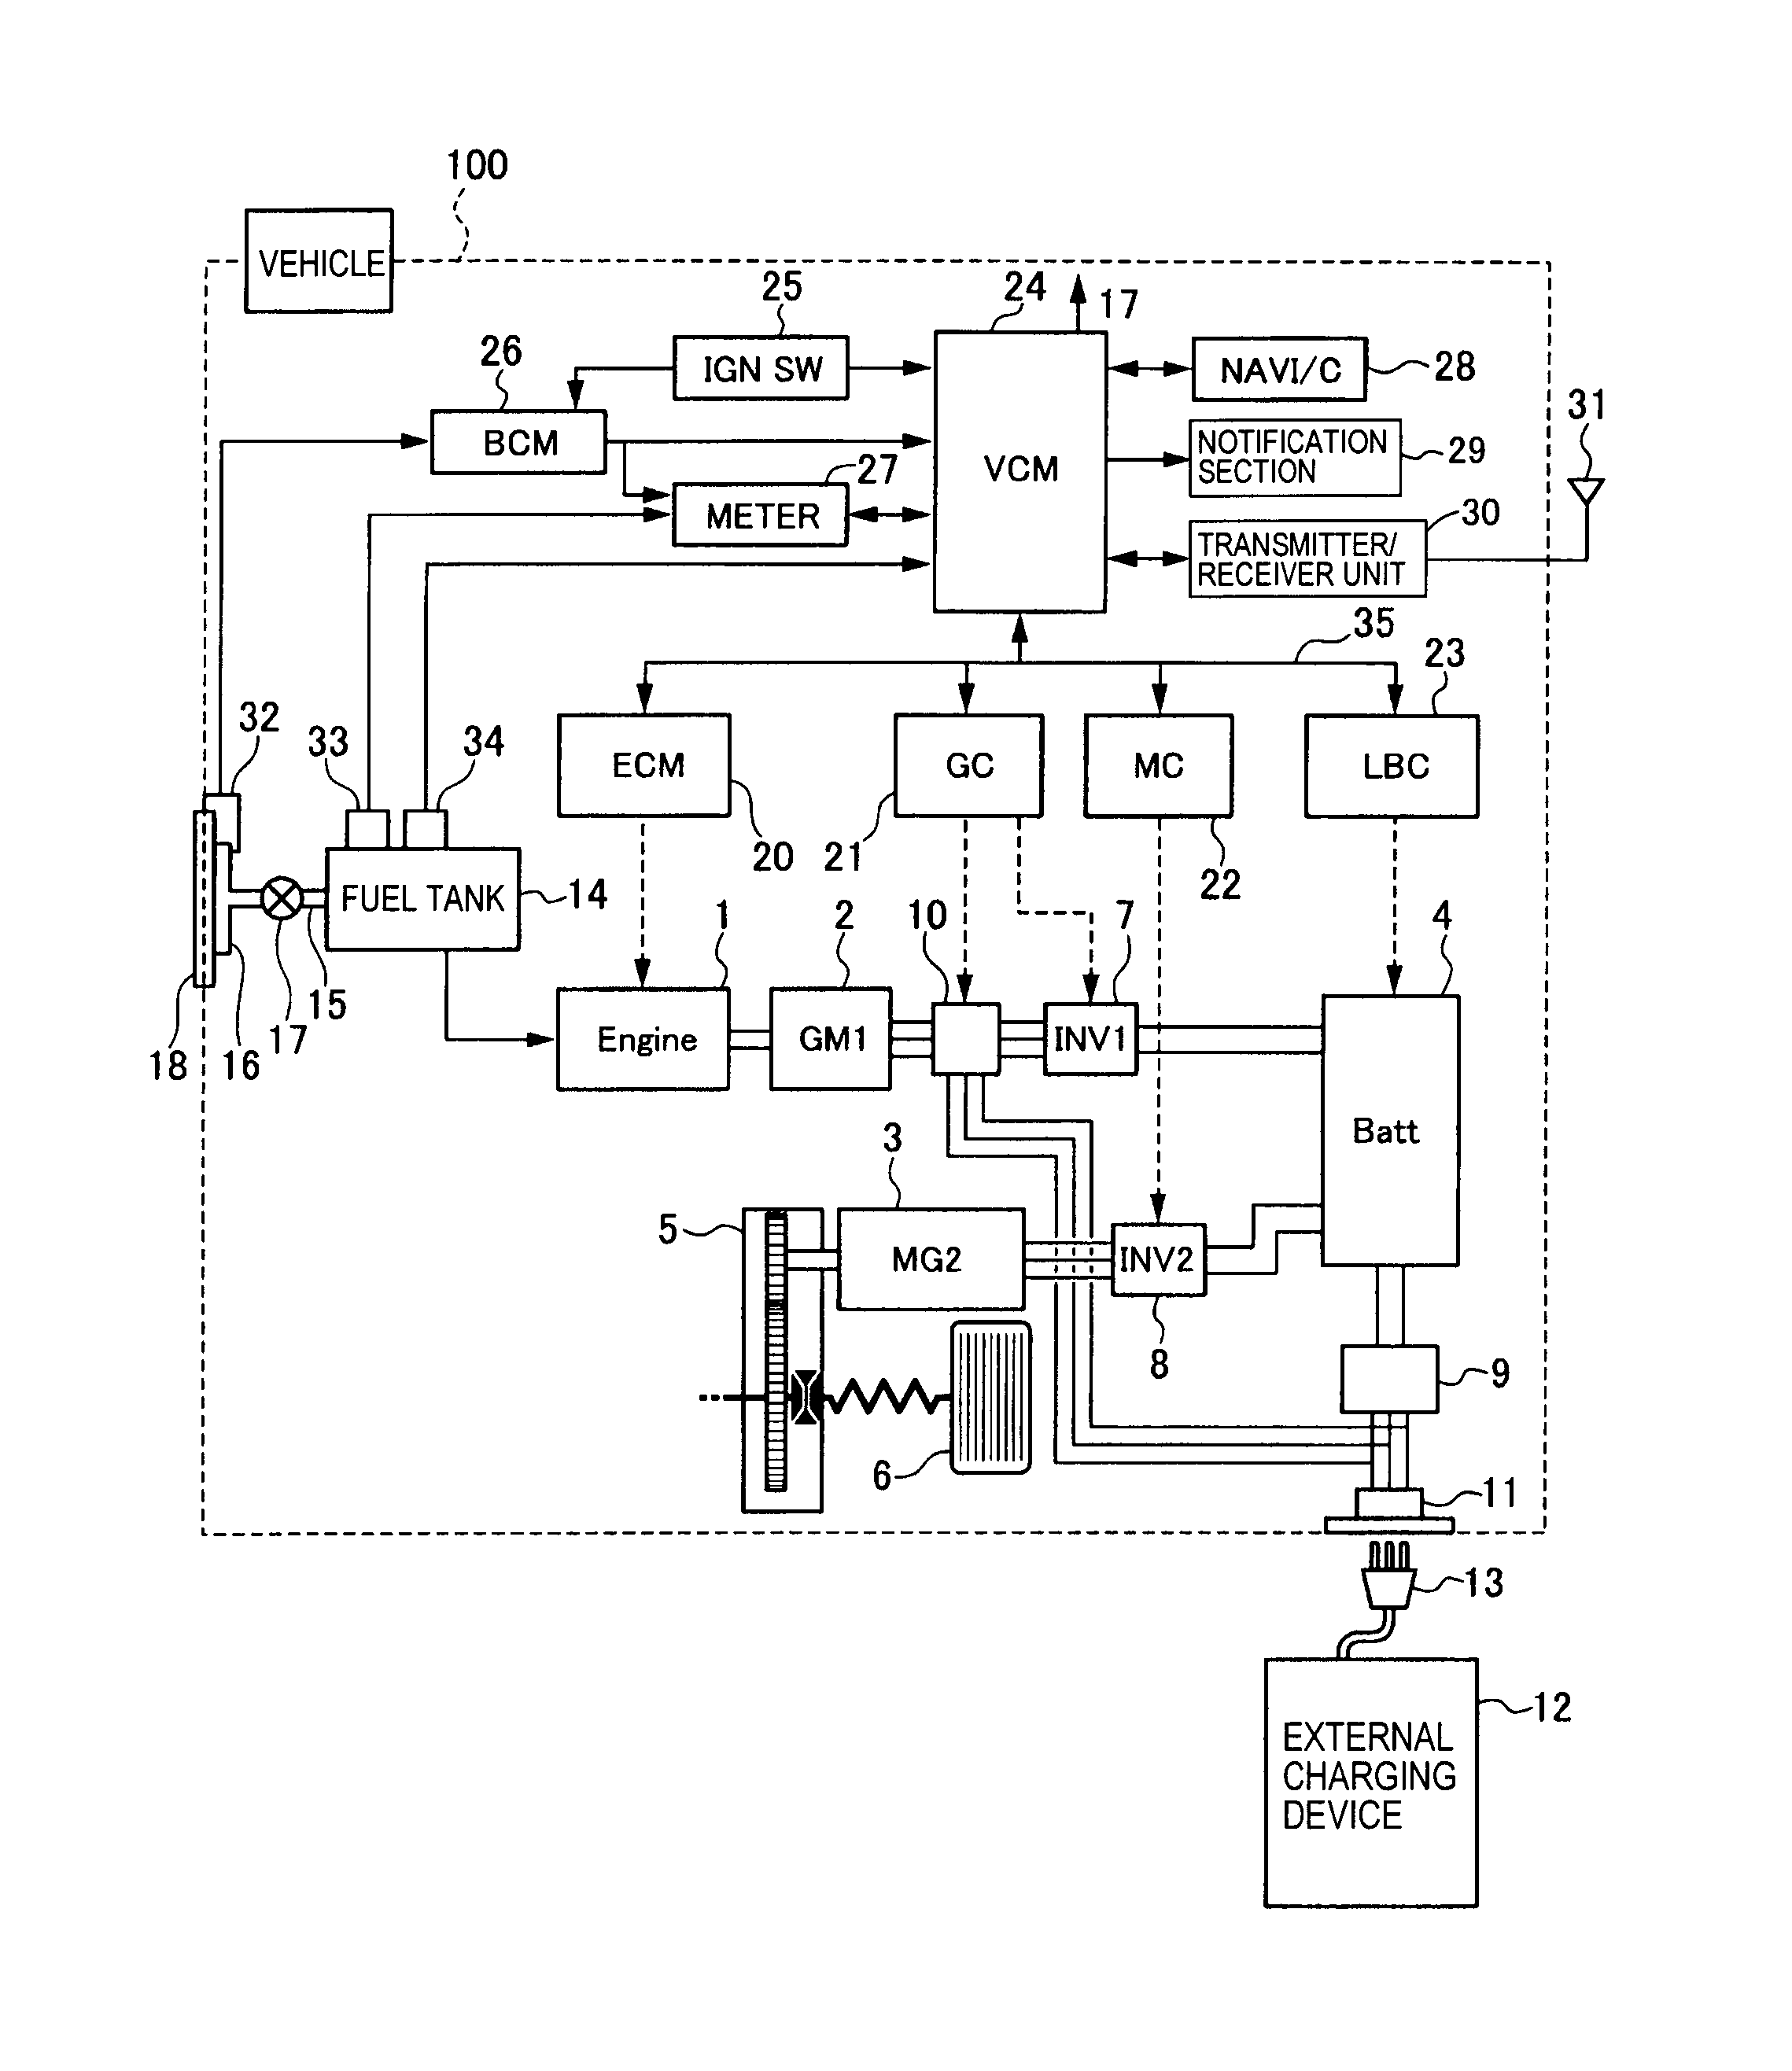 rib relay in a box 2401b wiring diagram